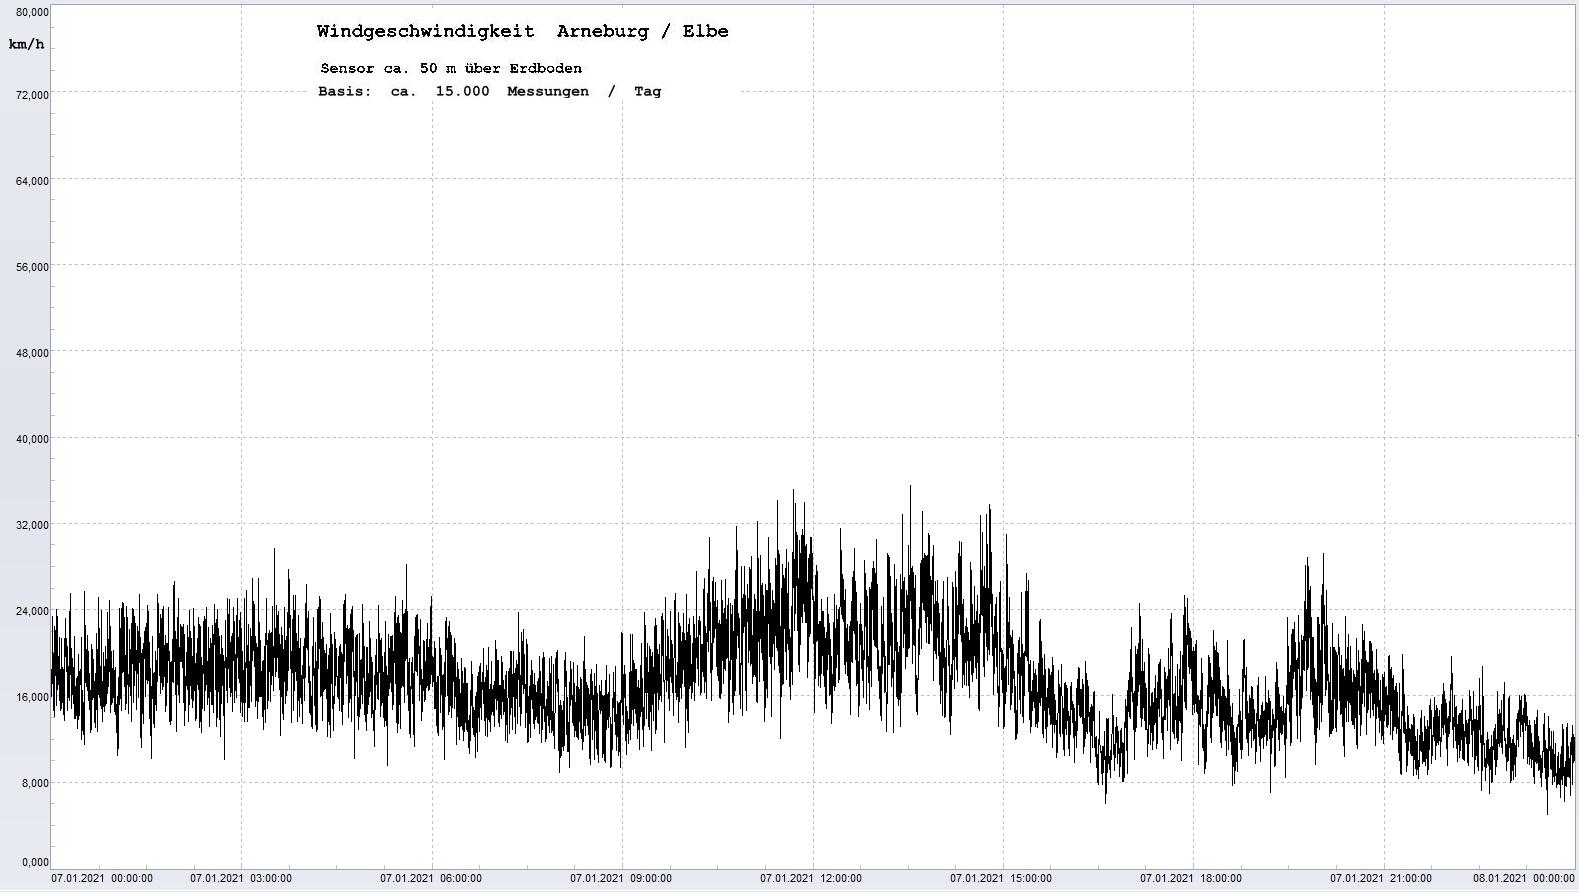 Arneburg Tages-Diagramm Winddaten, 07.01.2021
  Diagramm, Sensor auf Gebude, ca. 50 m ber Erdboden, Basis: 5s-Aufzeichnung